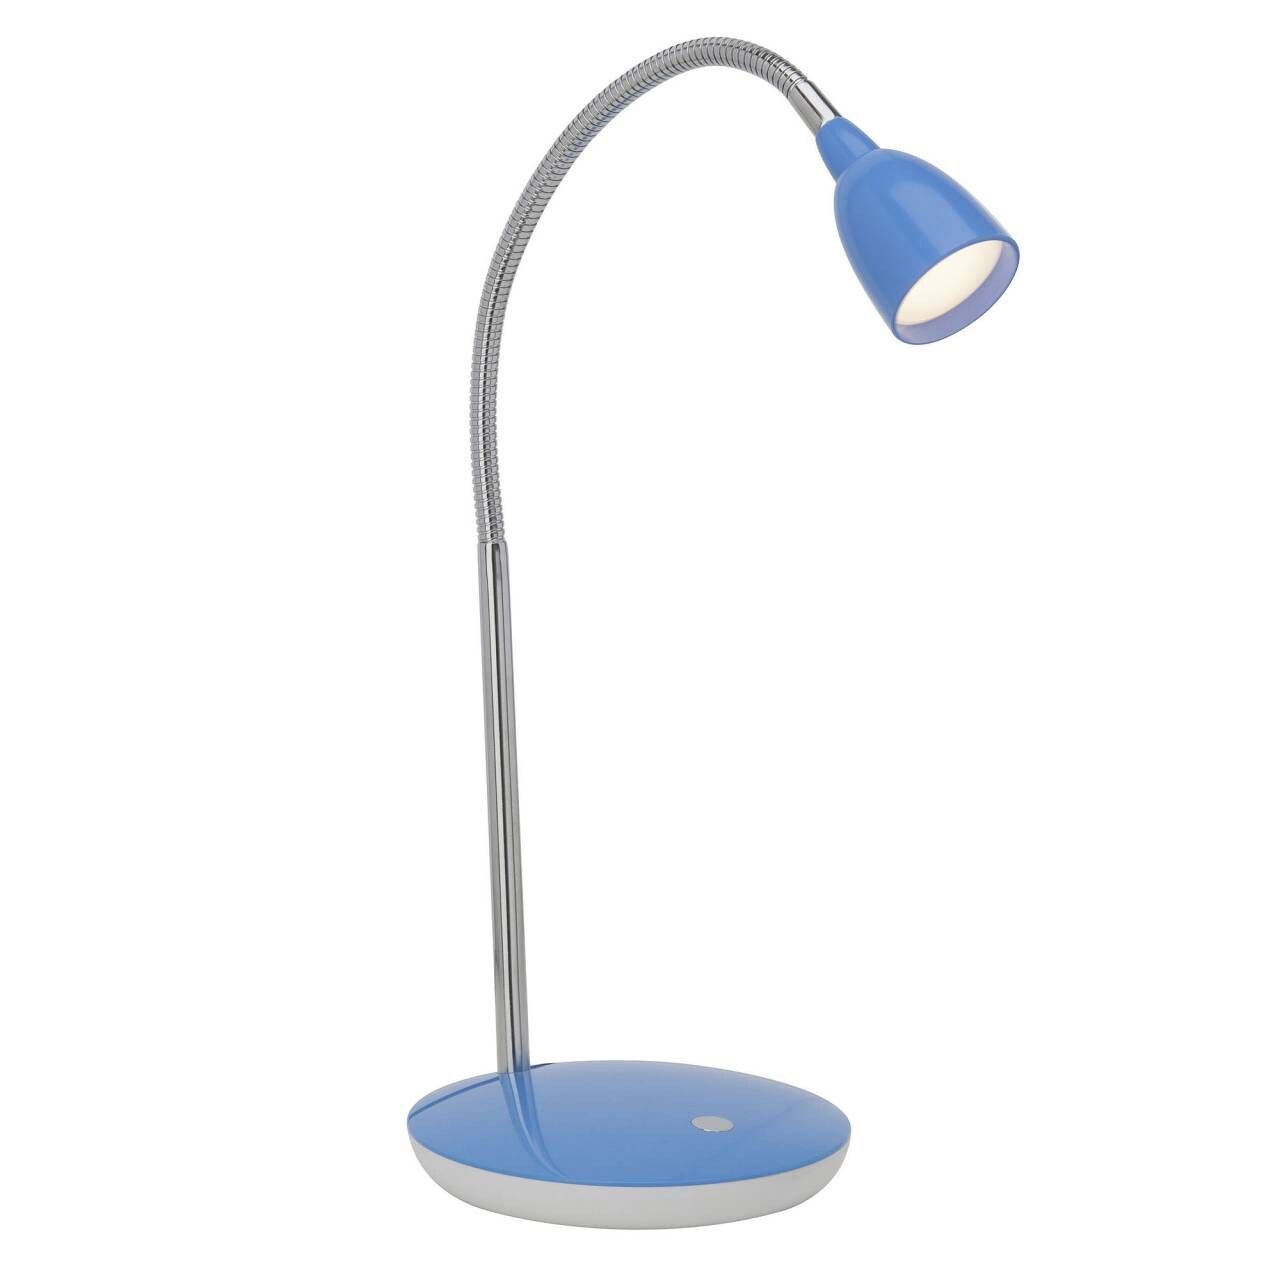 BRILLIANT Lampe Anthony LED Tischleuchte eisen/blau   1x 2.4W LED integriert, (200lm, 3000K)   Mit Druckschalter an der 